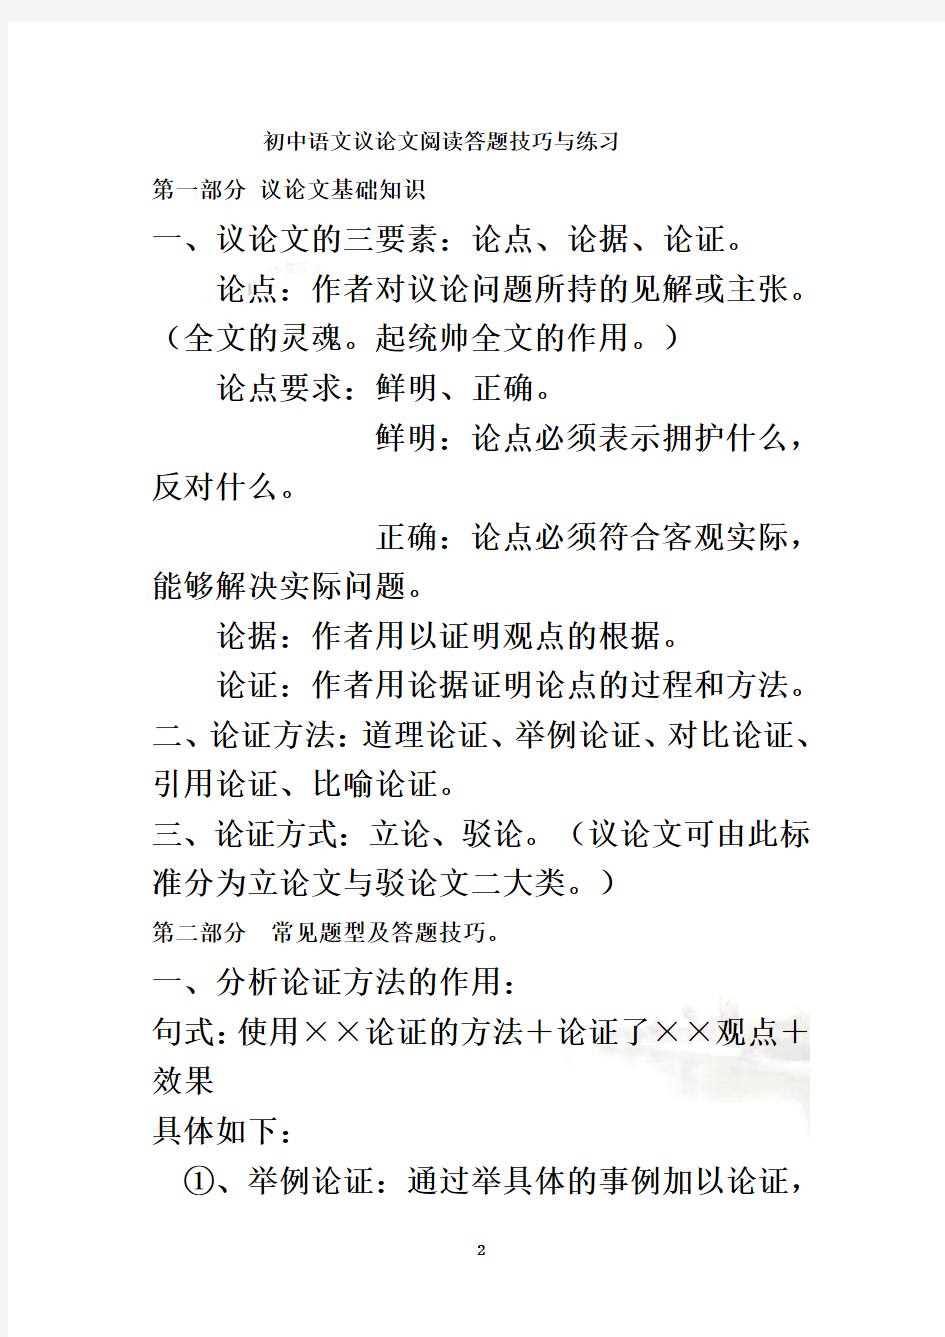 初中语文议论文阅读答题技巧与练习-完整版